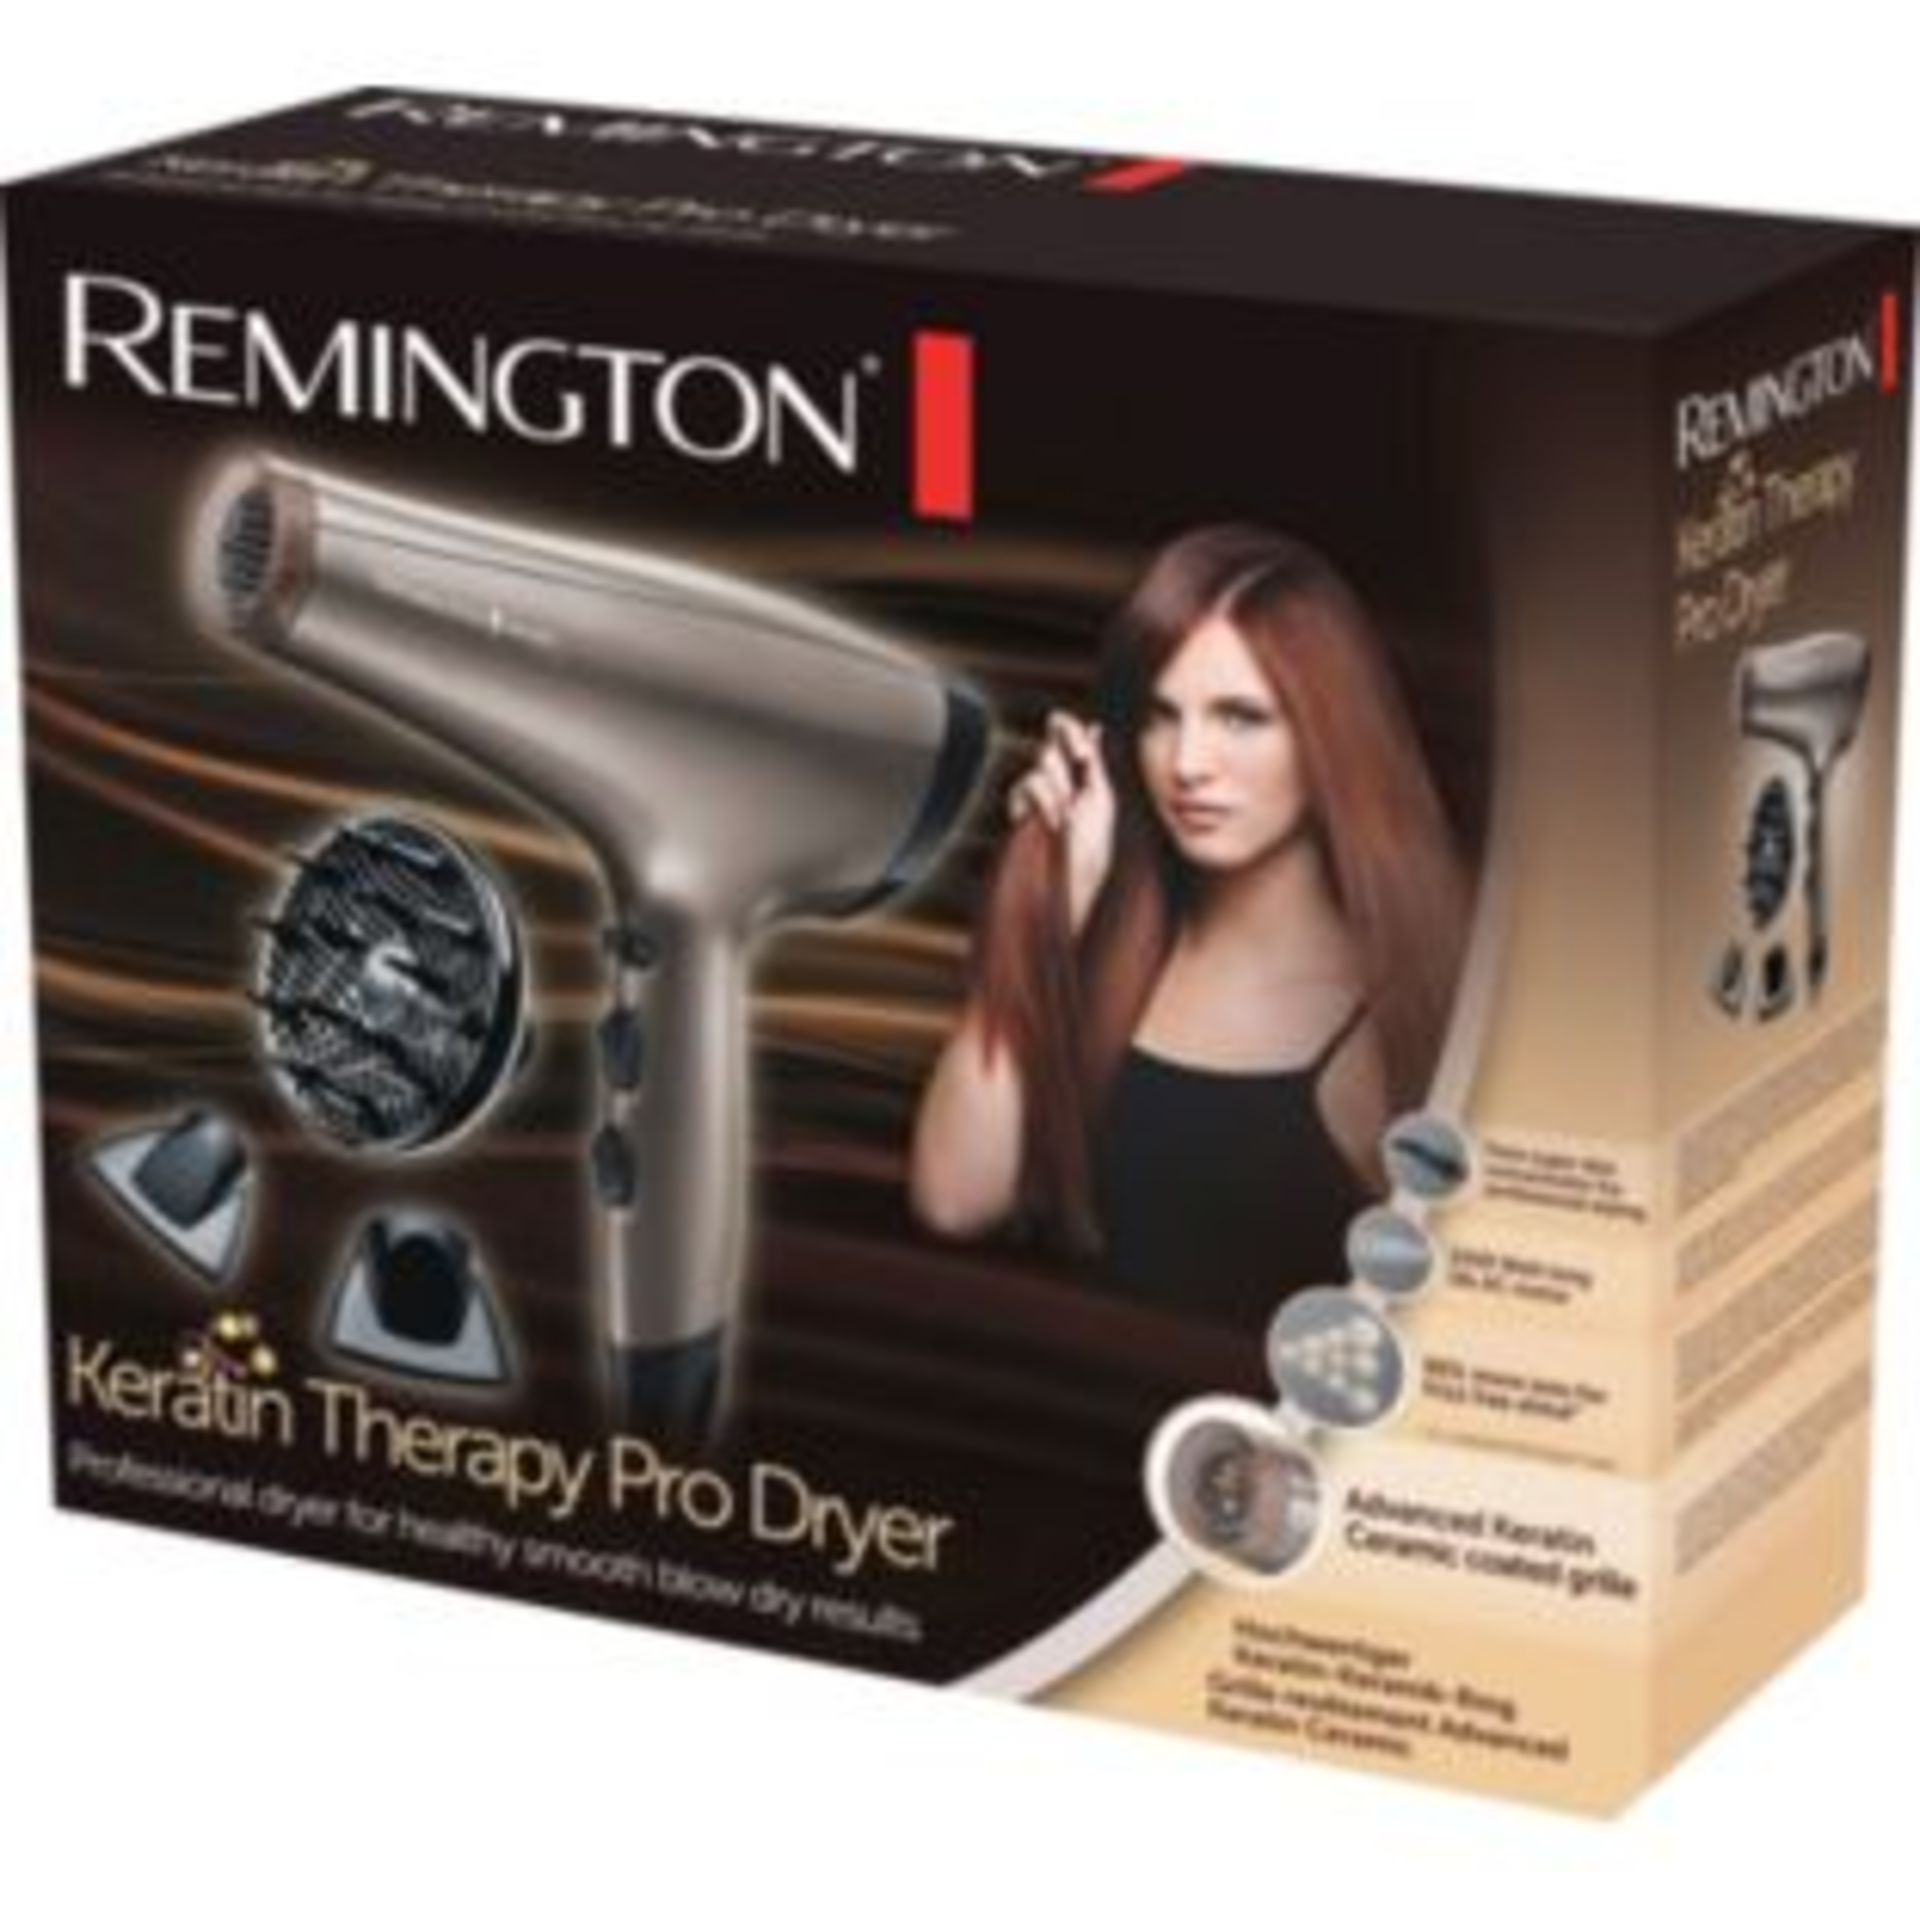 V Brand New Remington Keratin Therapy Pro Dryer 2200 Watt - Advanced Keratin Ceramin Coated Grill - Image 2 of 2